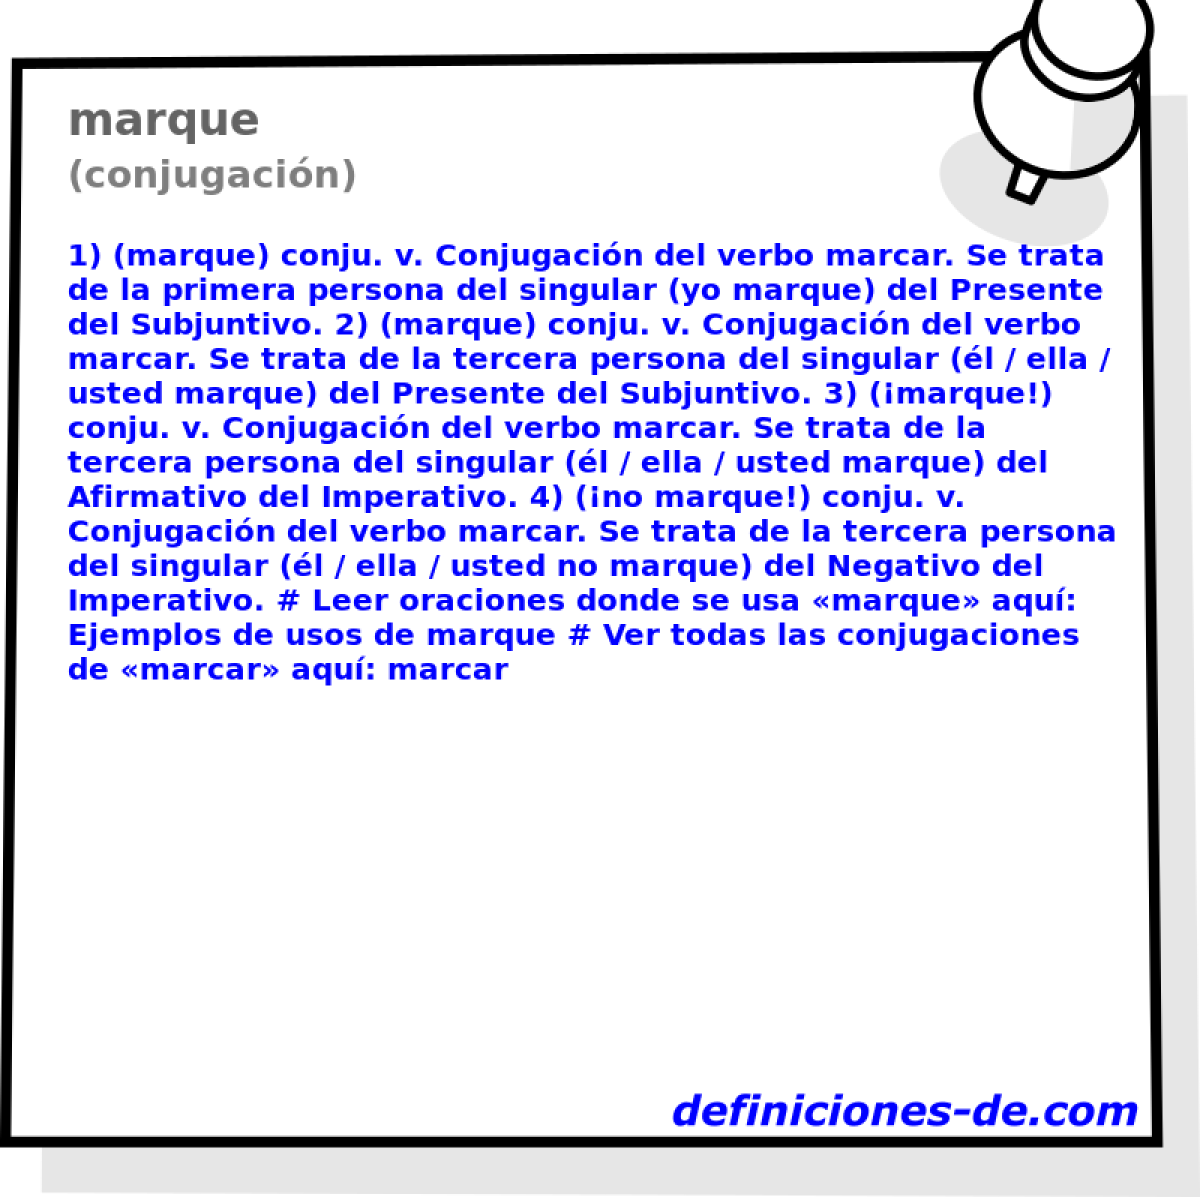 marque (conjugacin)